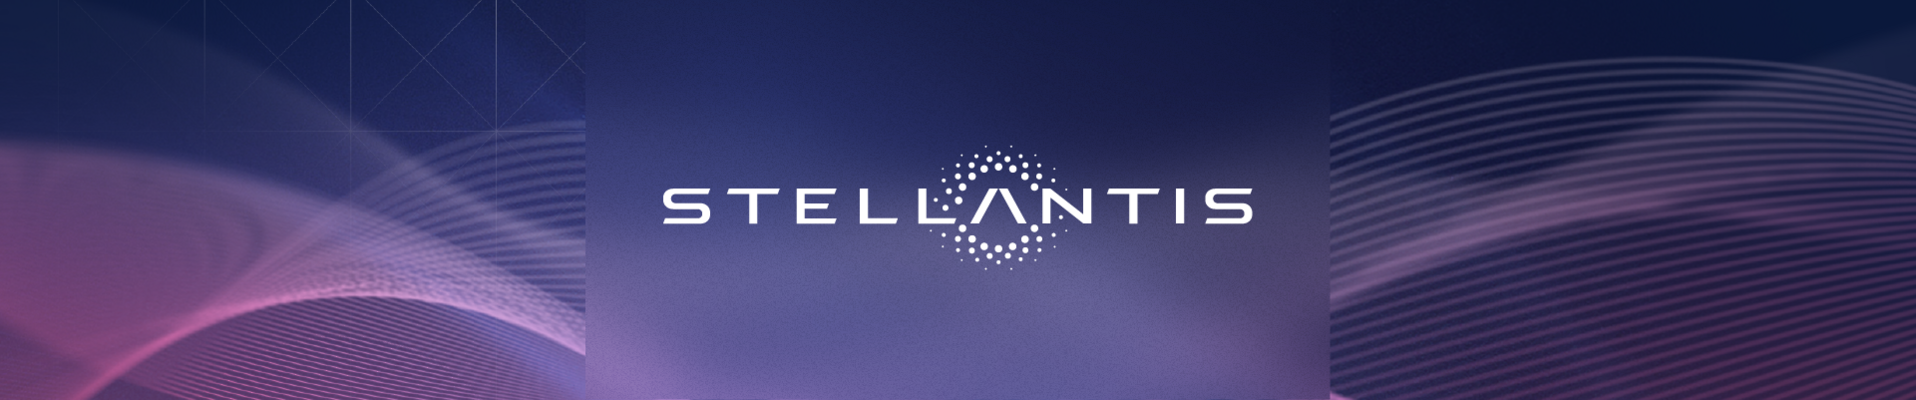 Stellantis Nederland | Next is Now Event | Internals